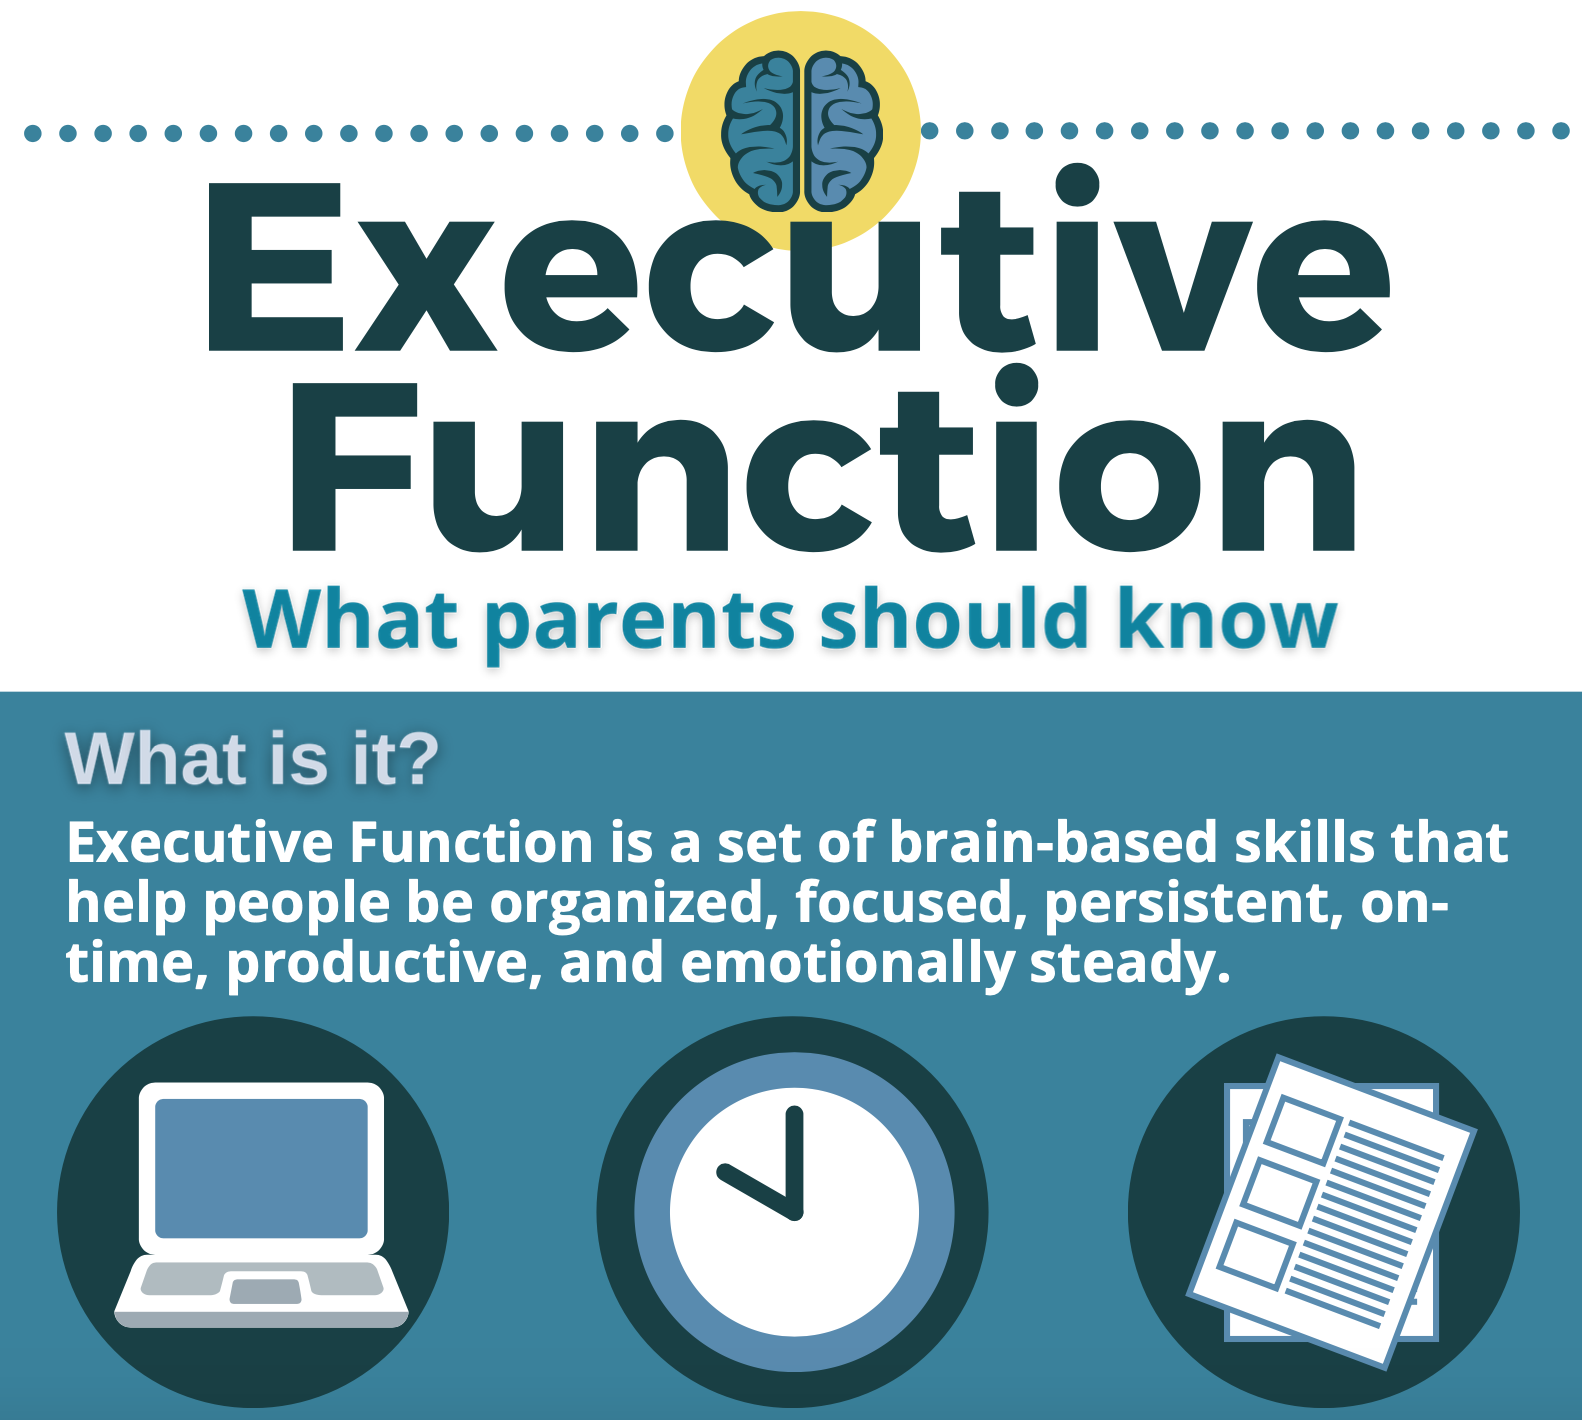 Executive Function basics